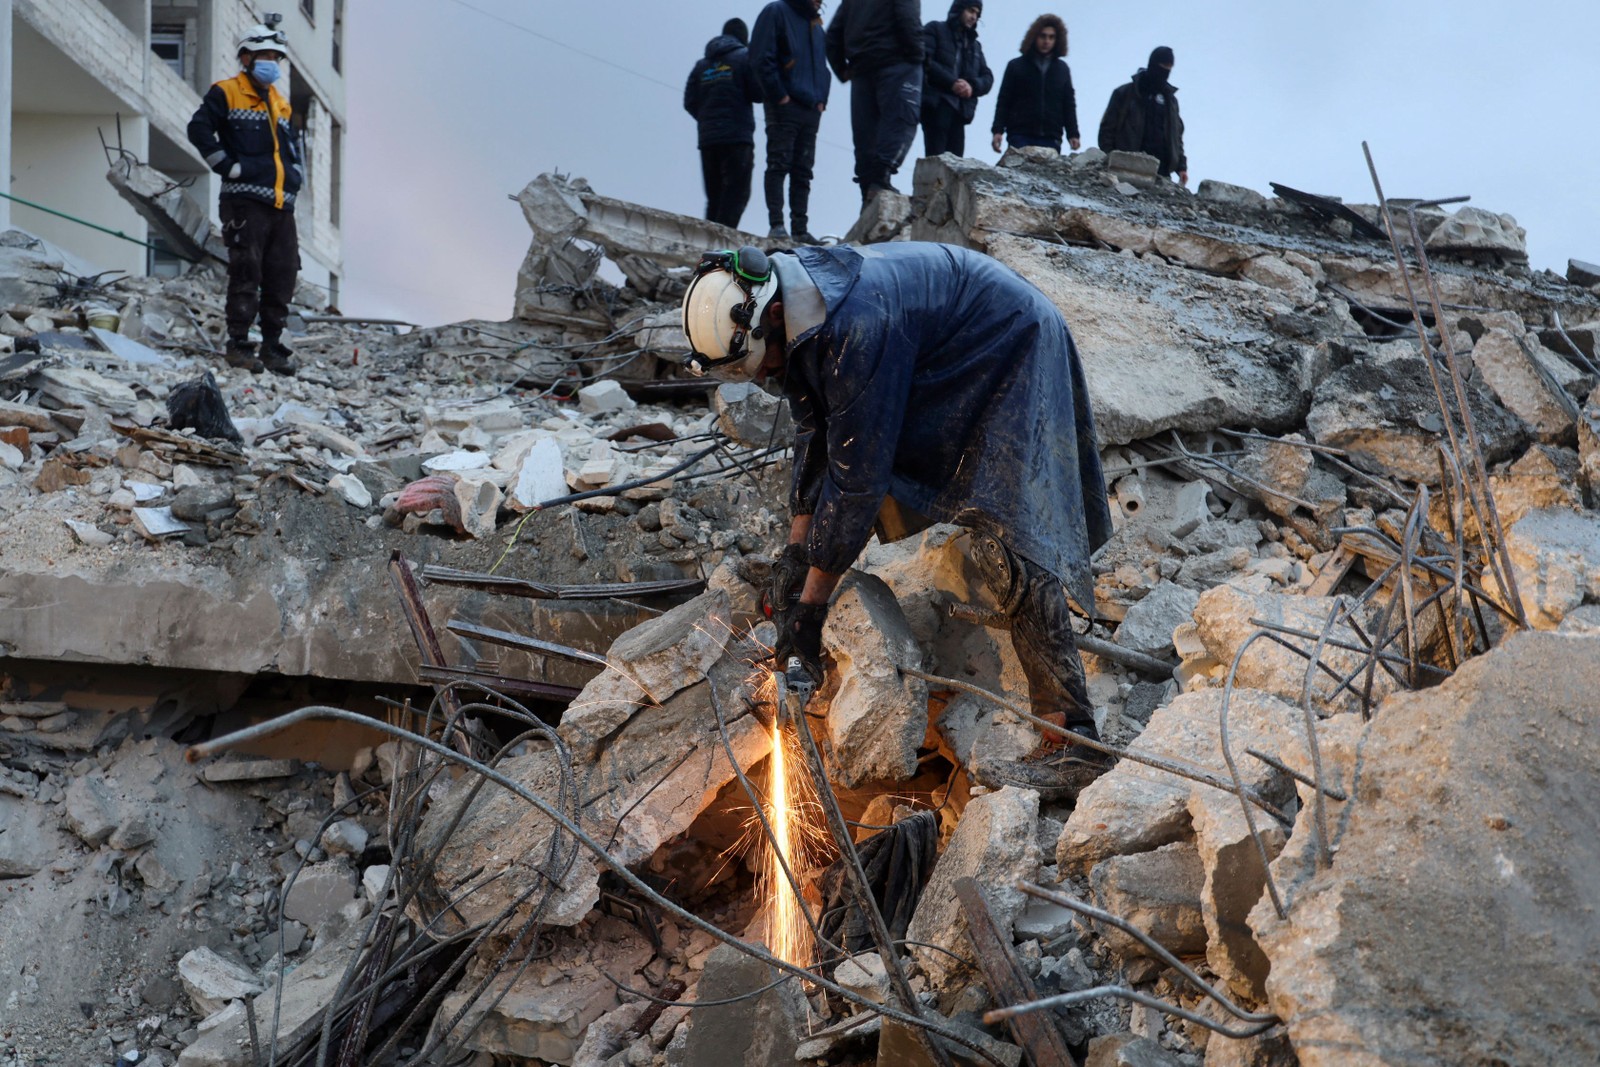 Membros da defesa civil síria procuram vítimas sob os escombros após um terremoto na cidade de Zardana — Foto: Mohammed AL-RIFAI / AFP